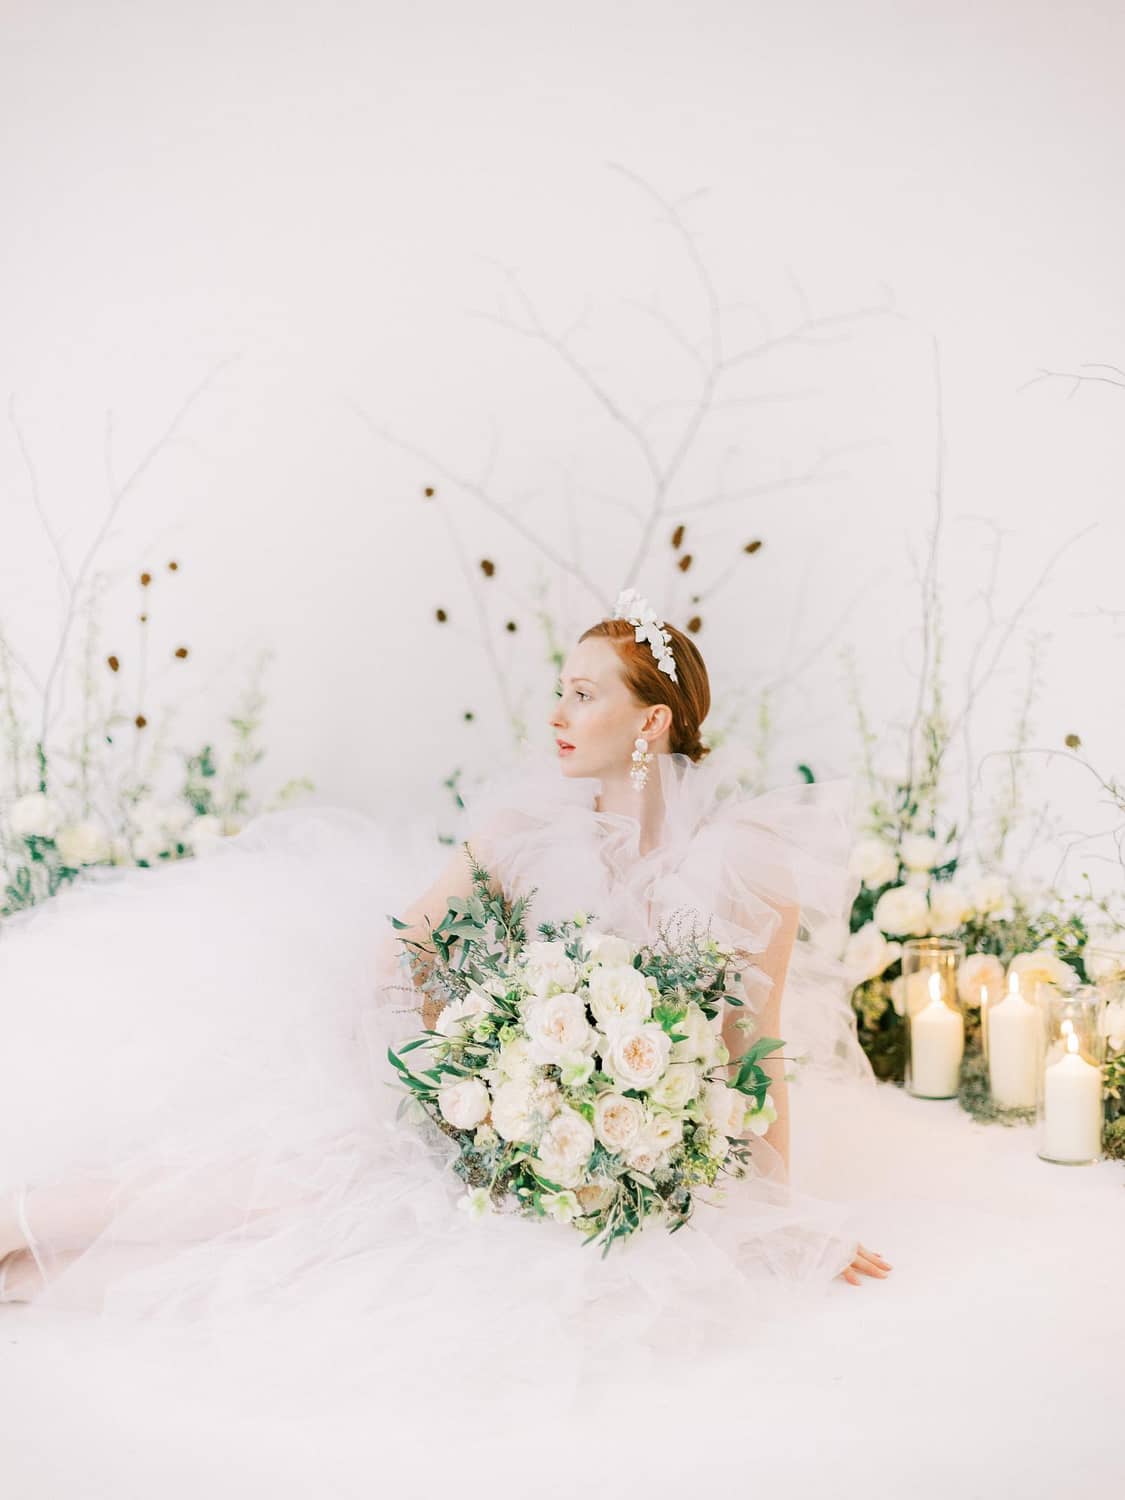 ブライダル ブーケと白いフリルのウェディング ドレスの花嫁